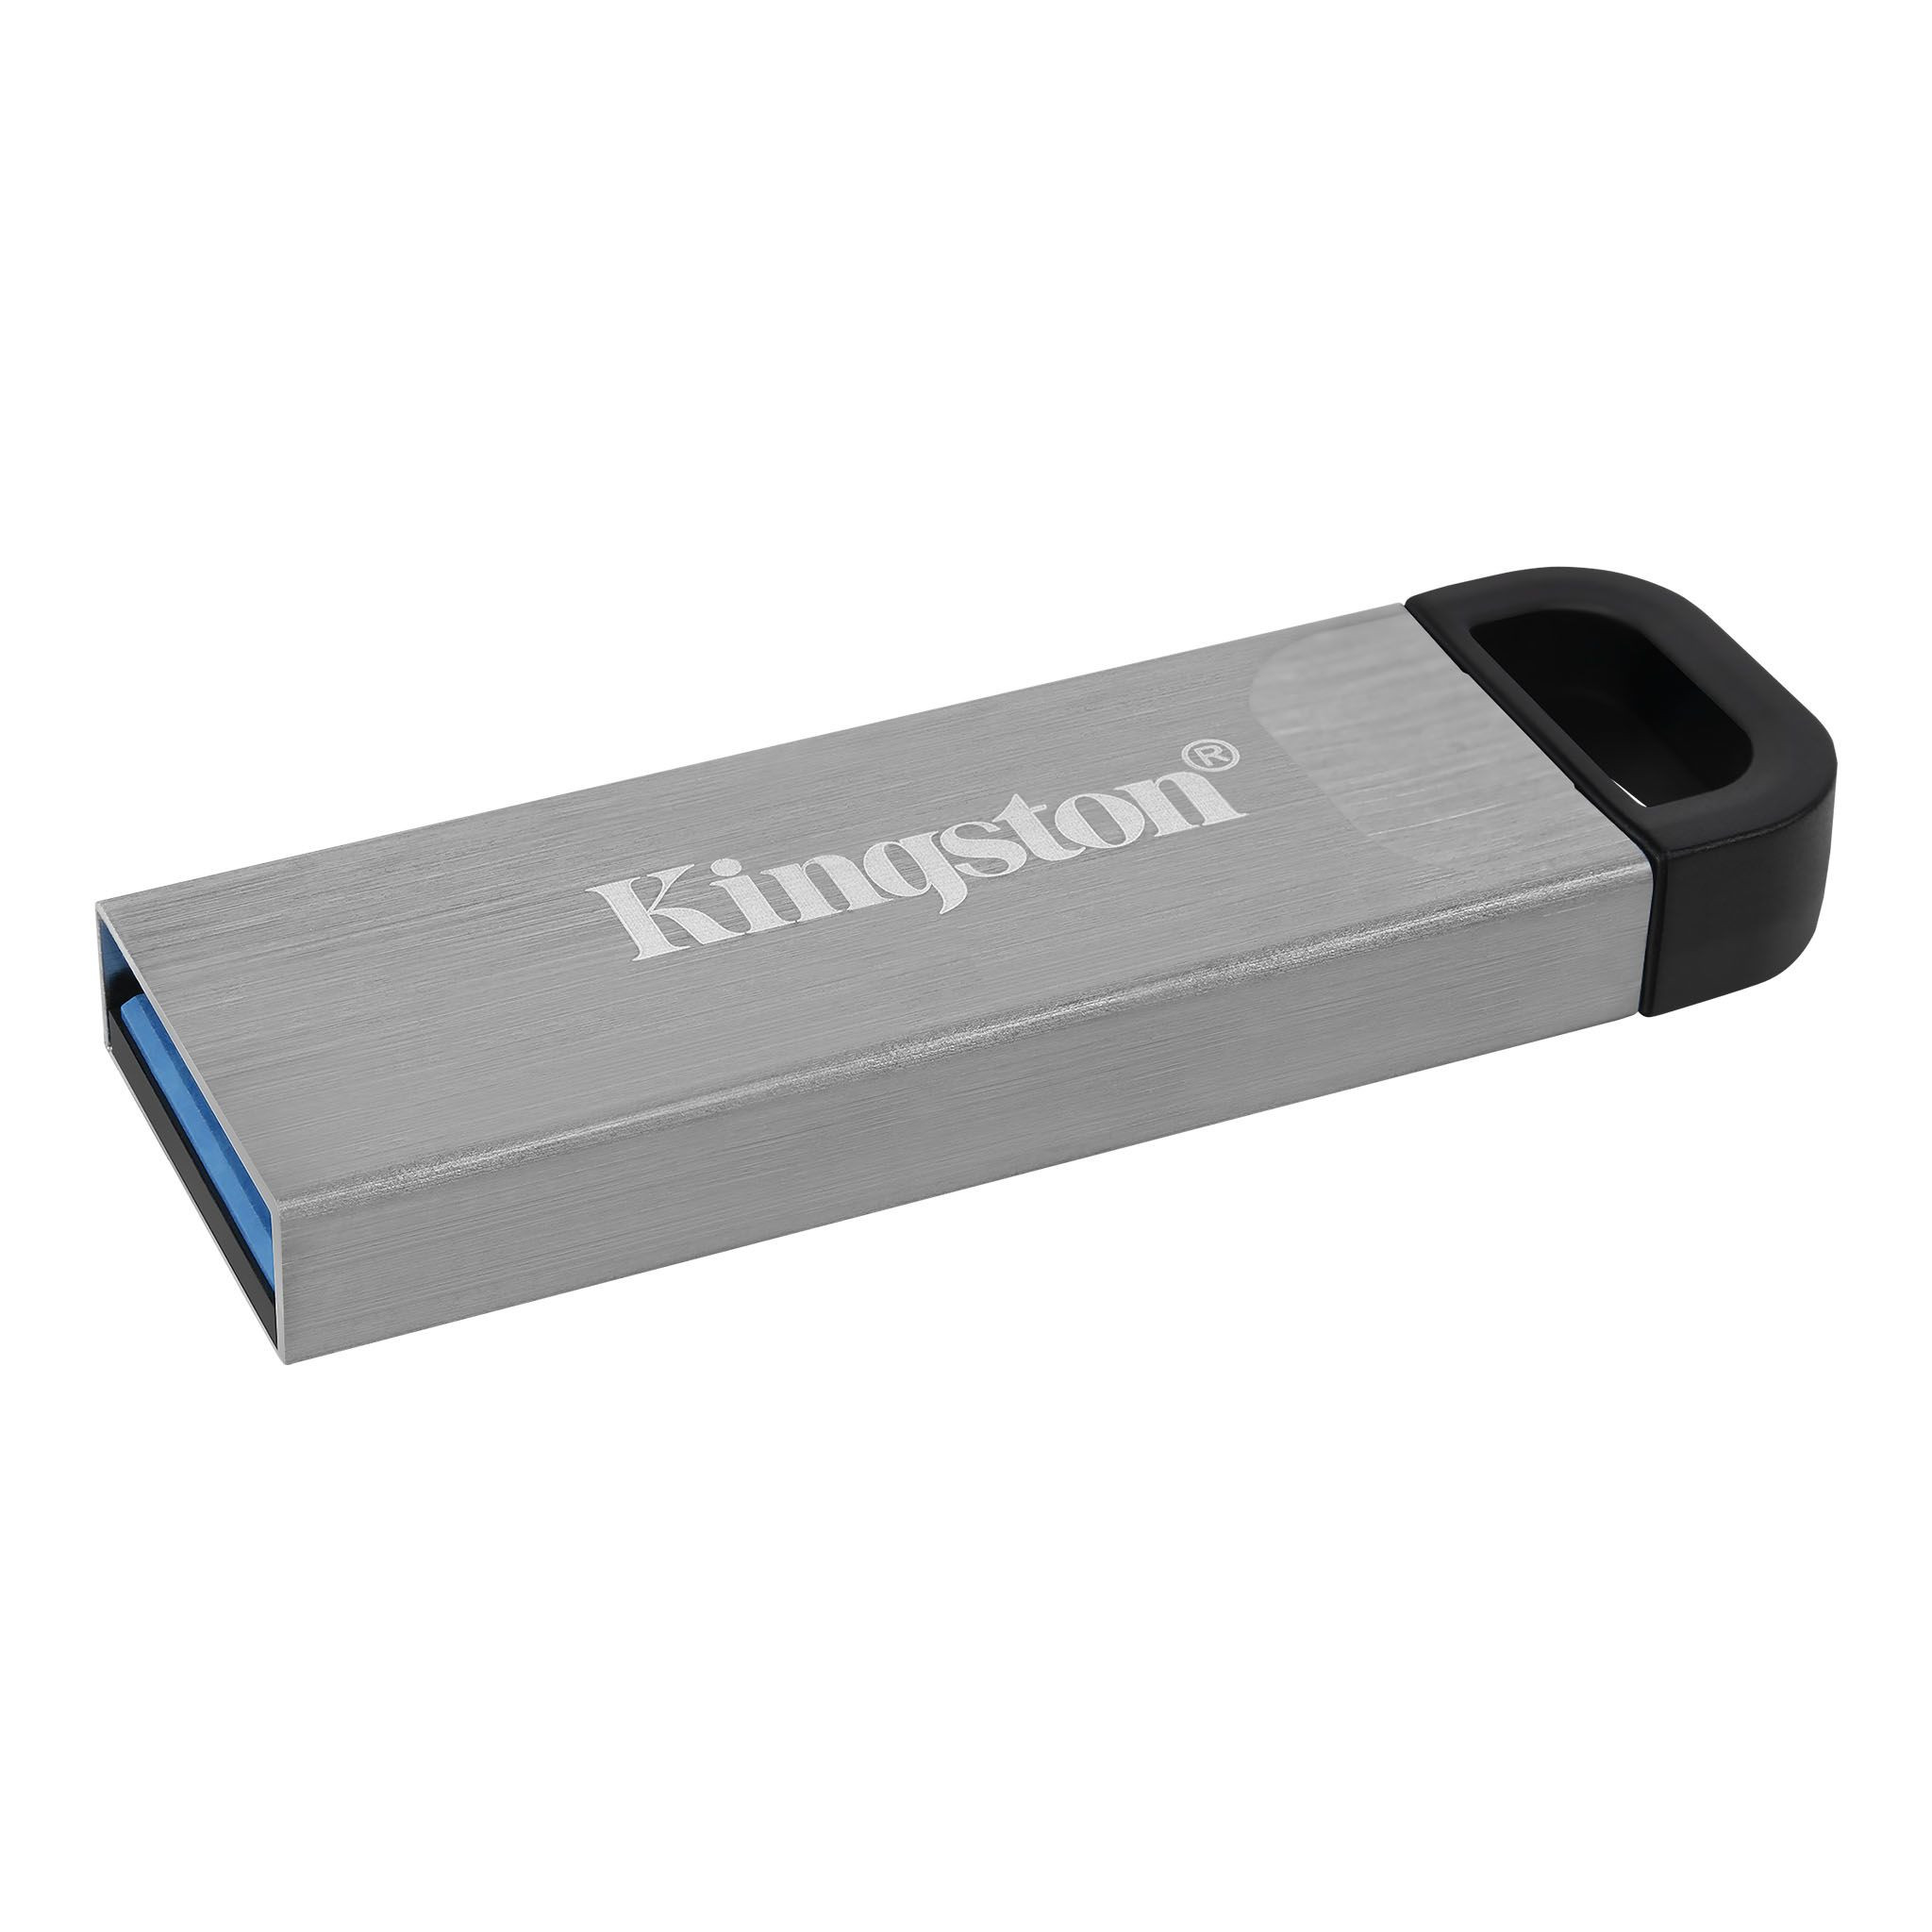 Kingston - DTKN-32GB -   